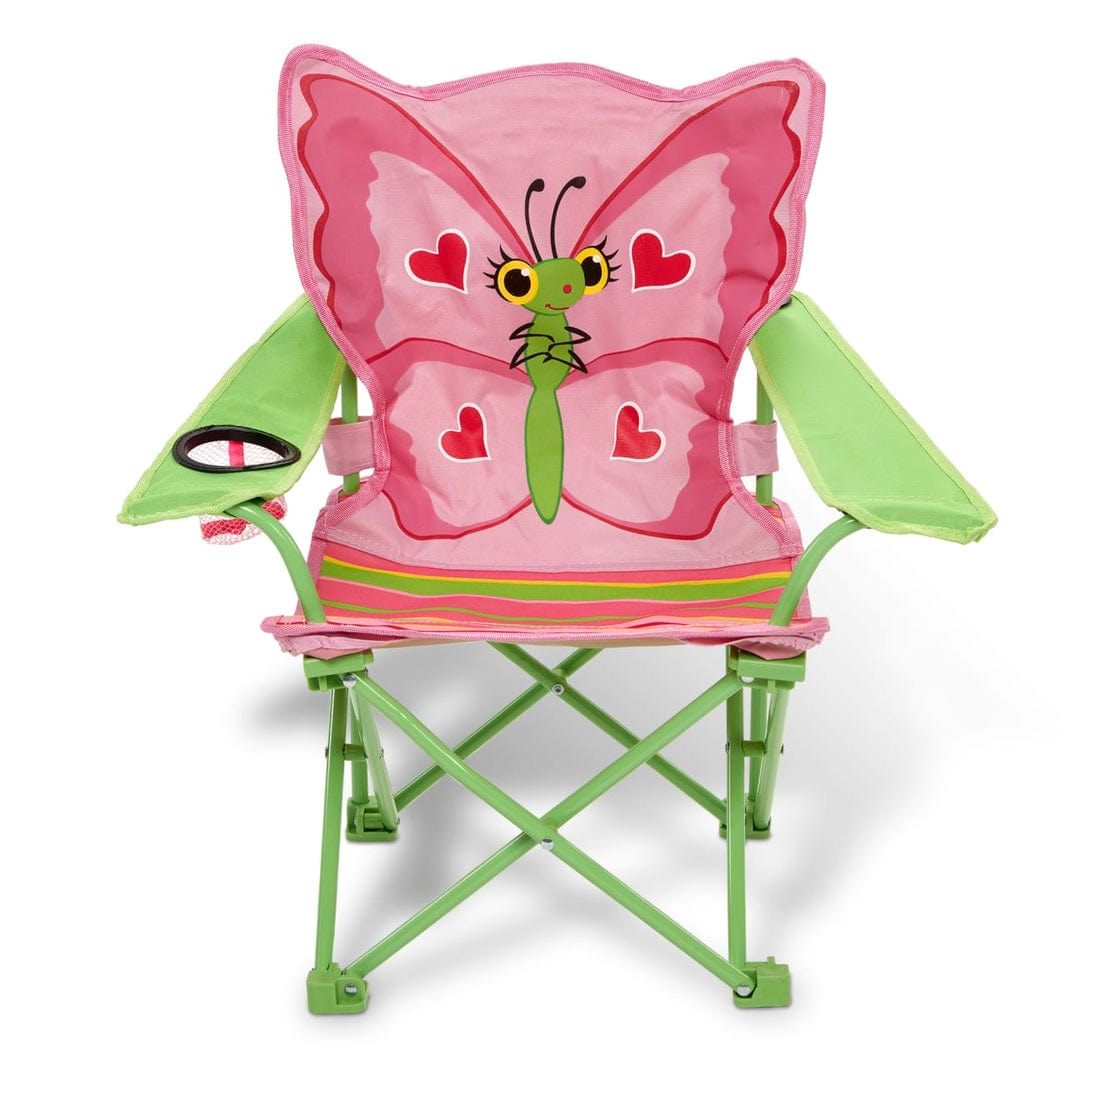 Melissa & Doug Melissa & Doug Bella Butterfly Child's Outdoor Chair - Little Miss Muffin Children & Home